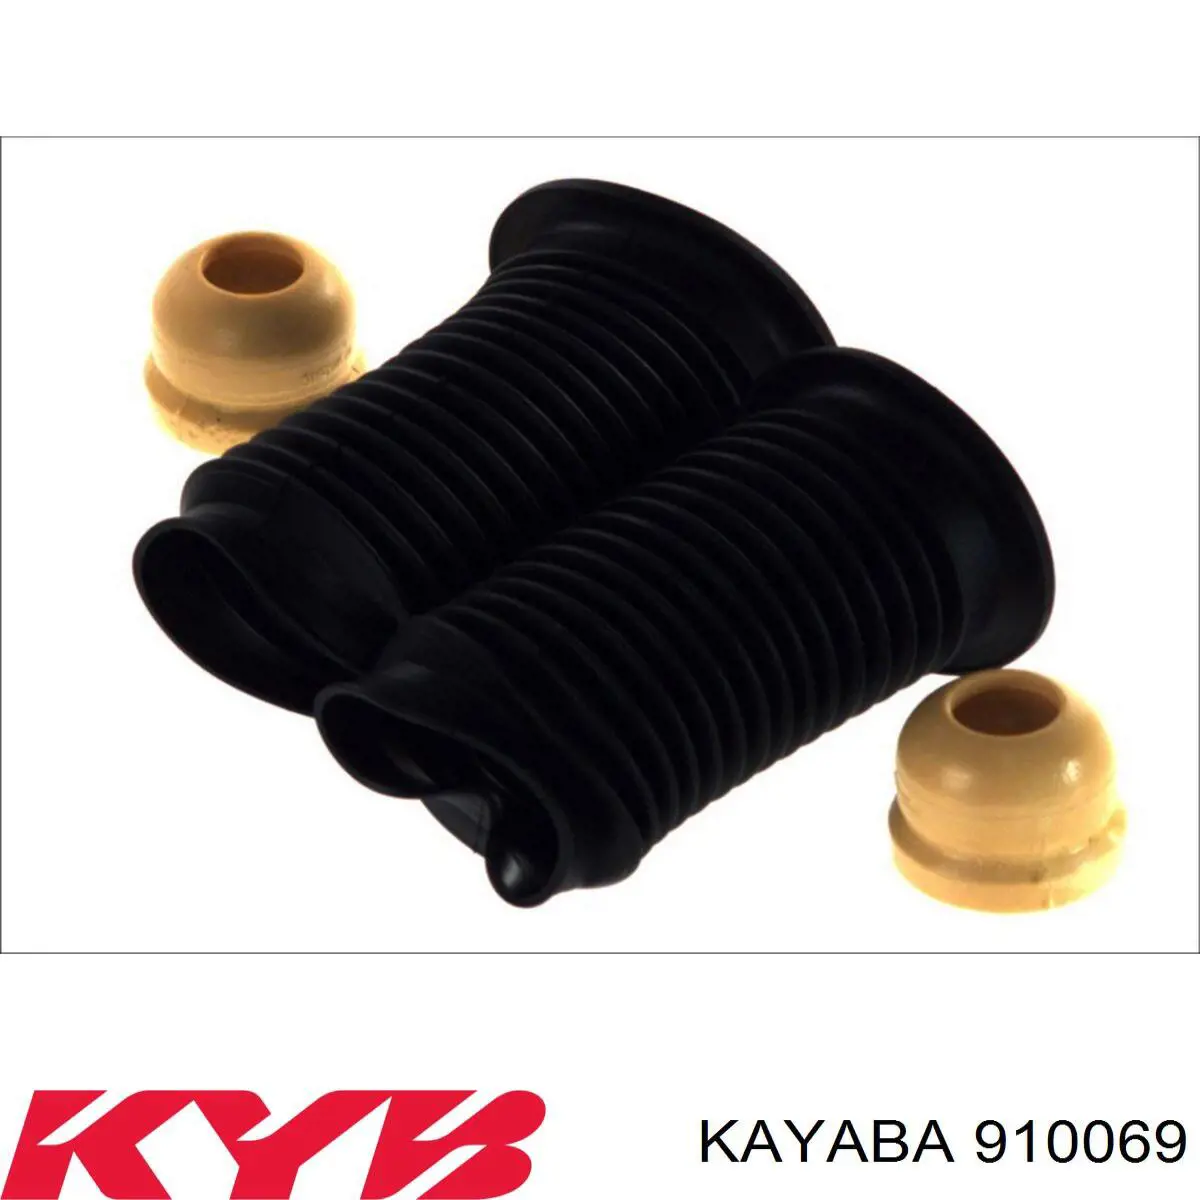 910069 Kayaba tope de amortiguador delantero, suspensión + fuelle